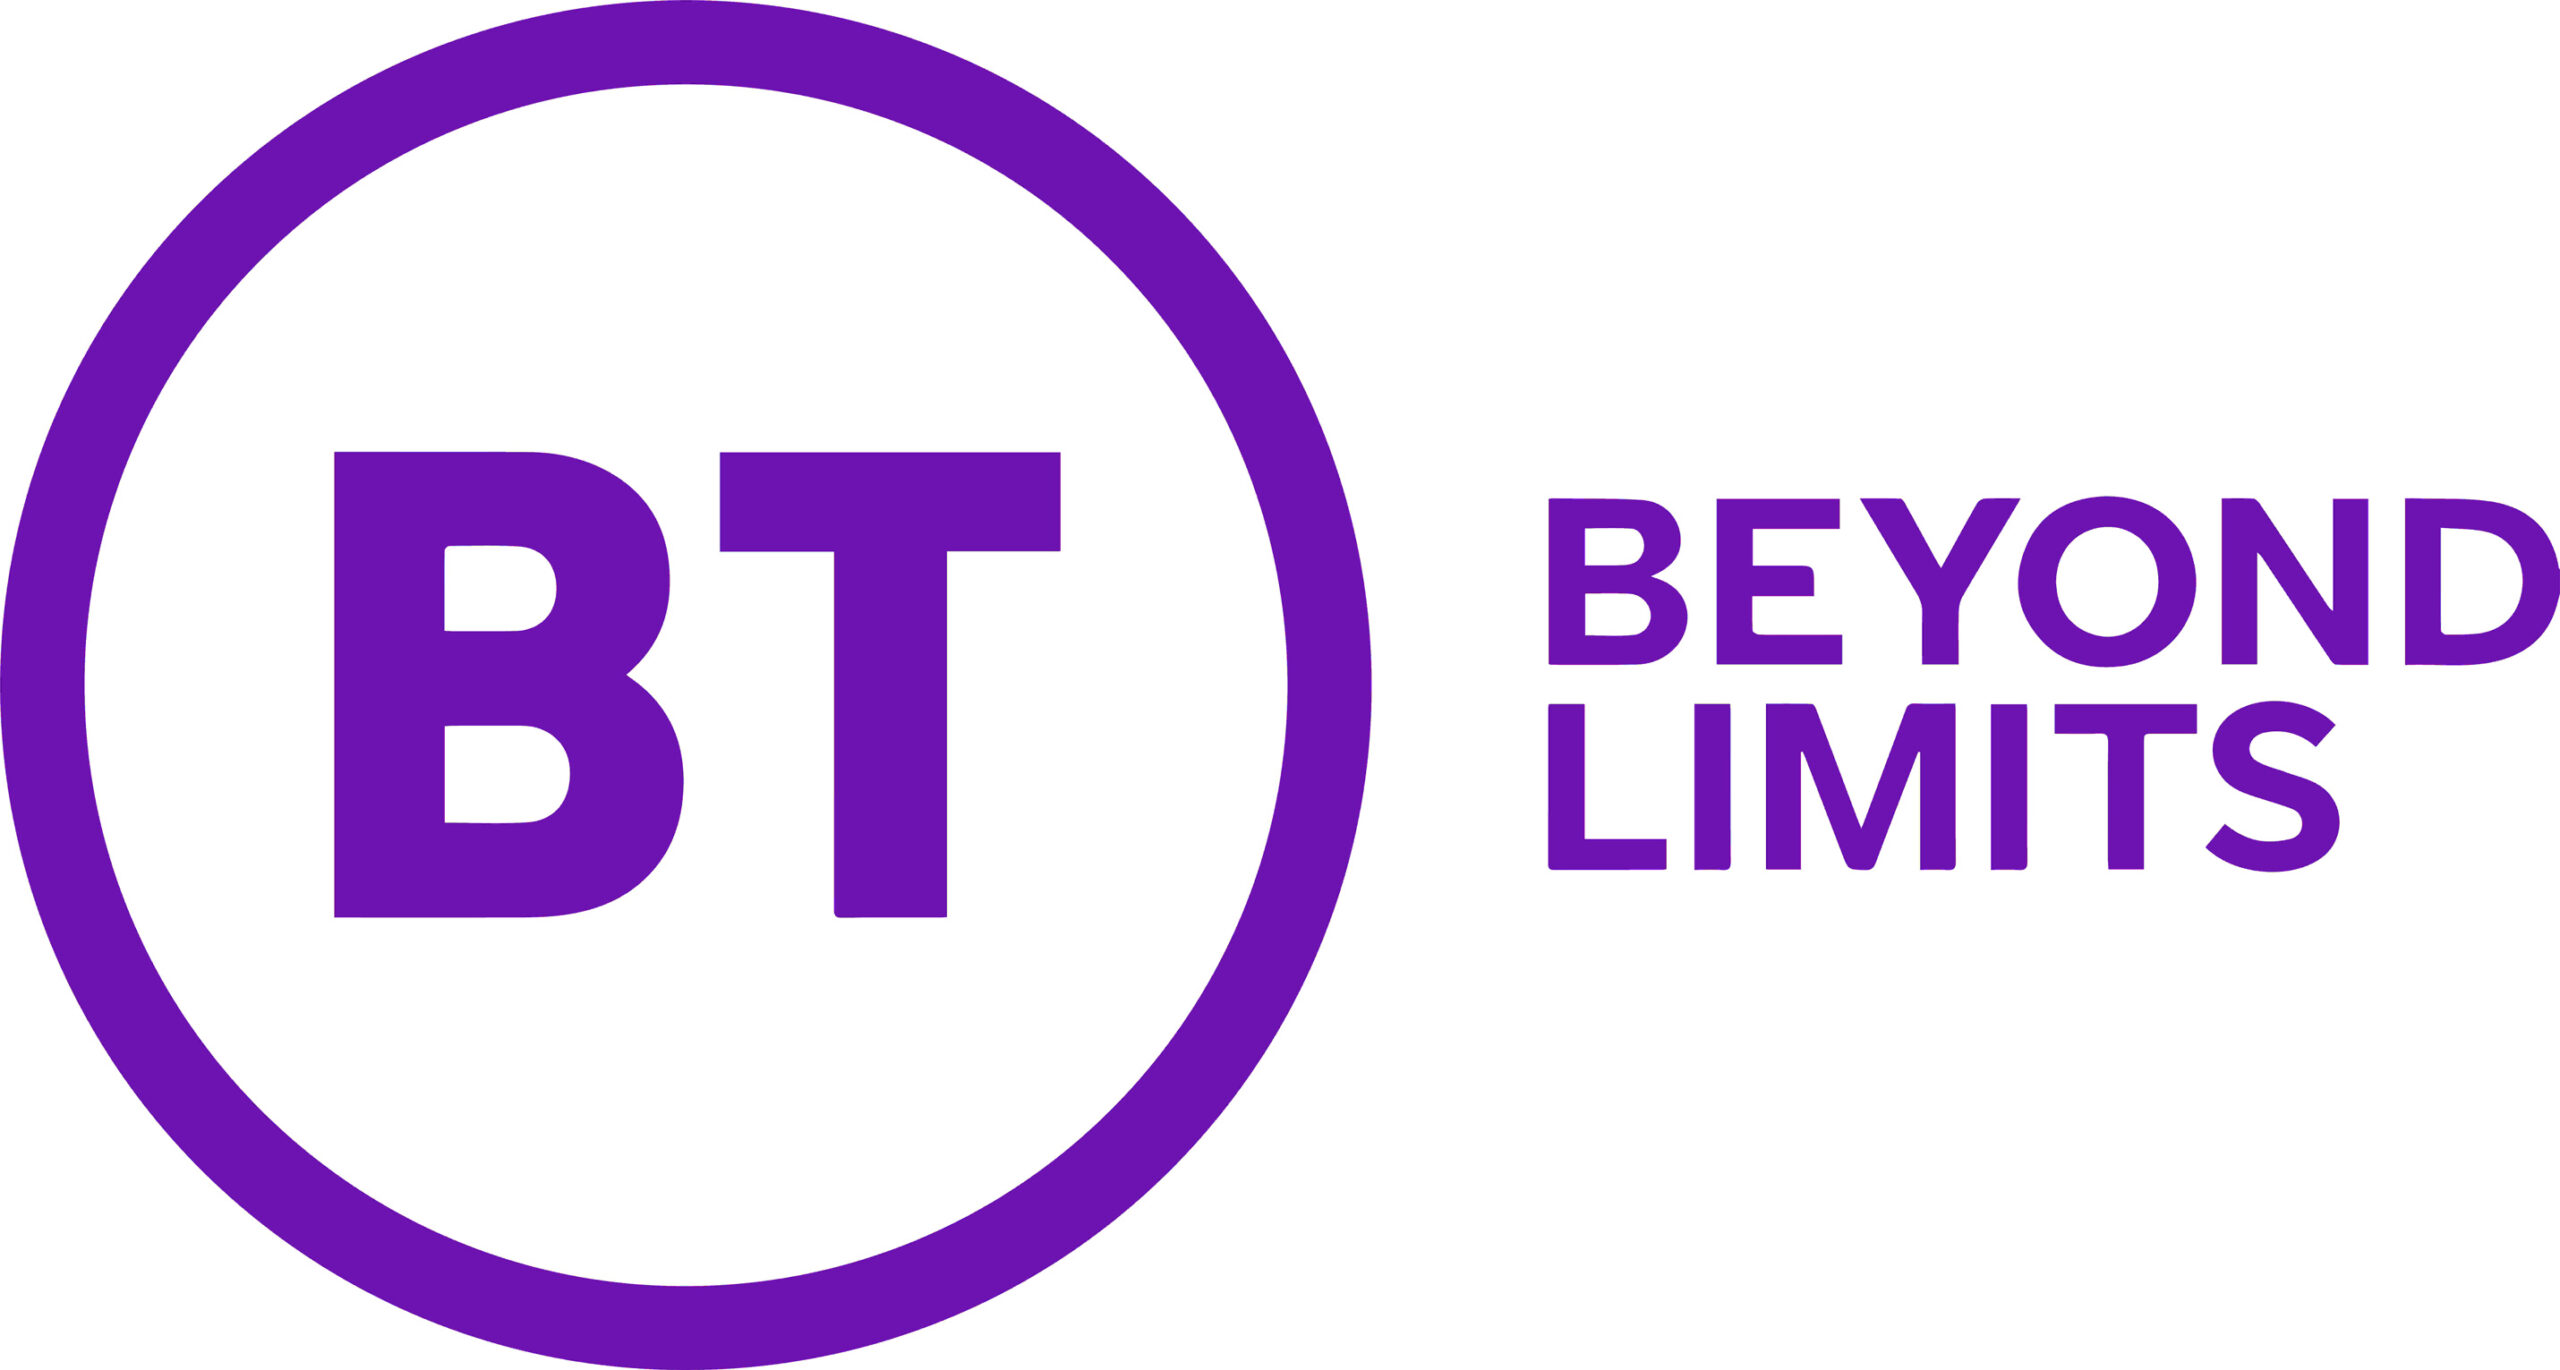 Beyond limits logo